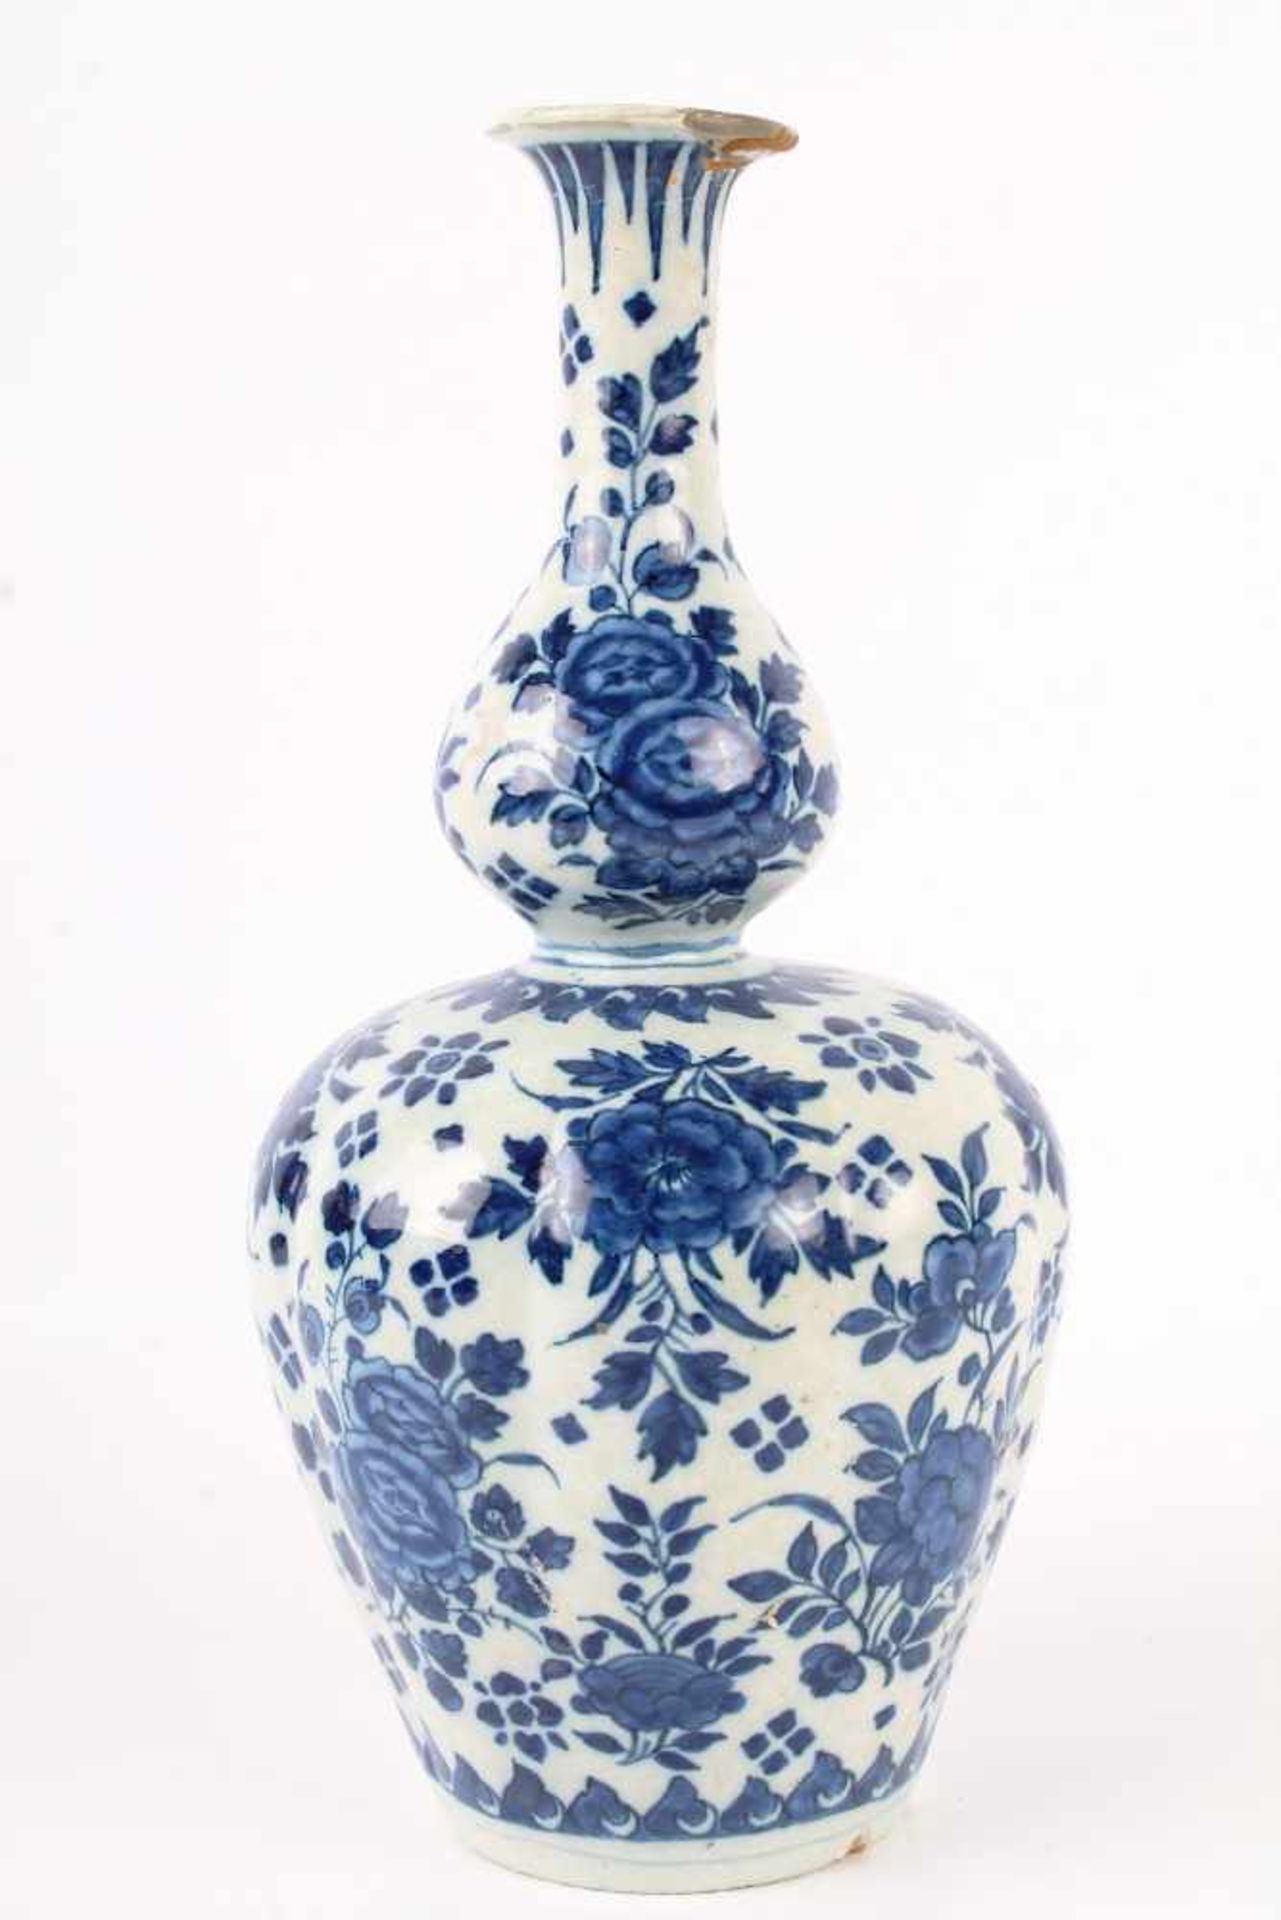 Teller und Vase, Delft 18. Jahrhundert, plate and vase 18th century,Keramik, Niederlande 18. - Image 2 of 4